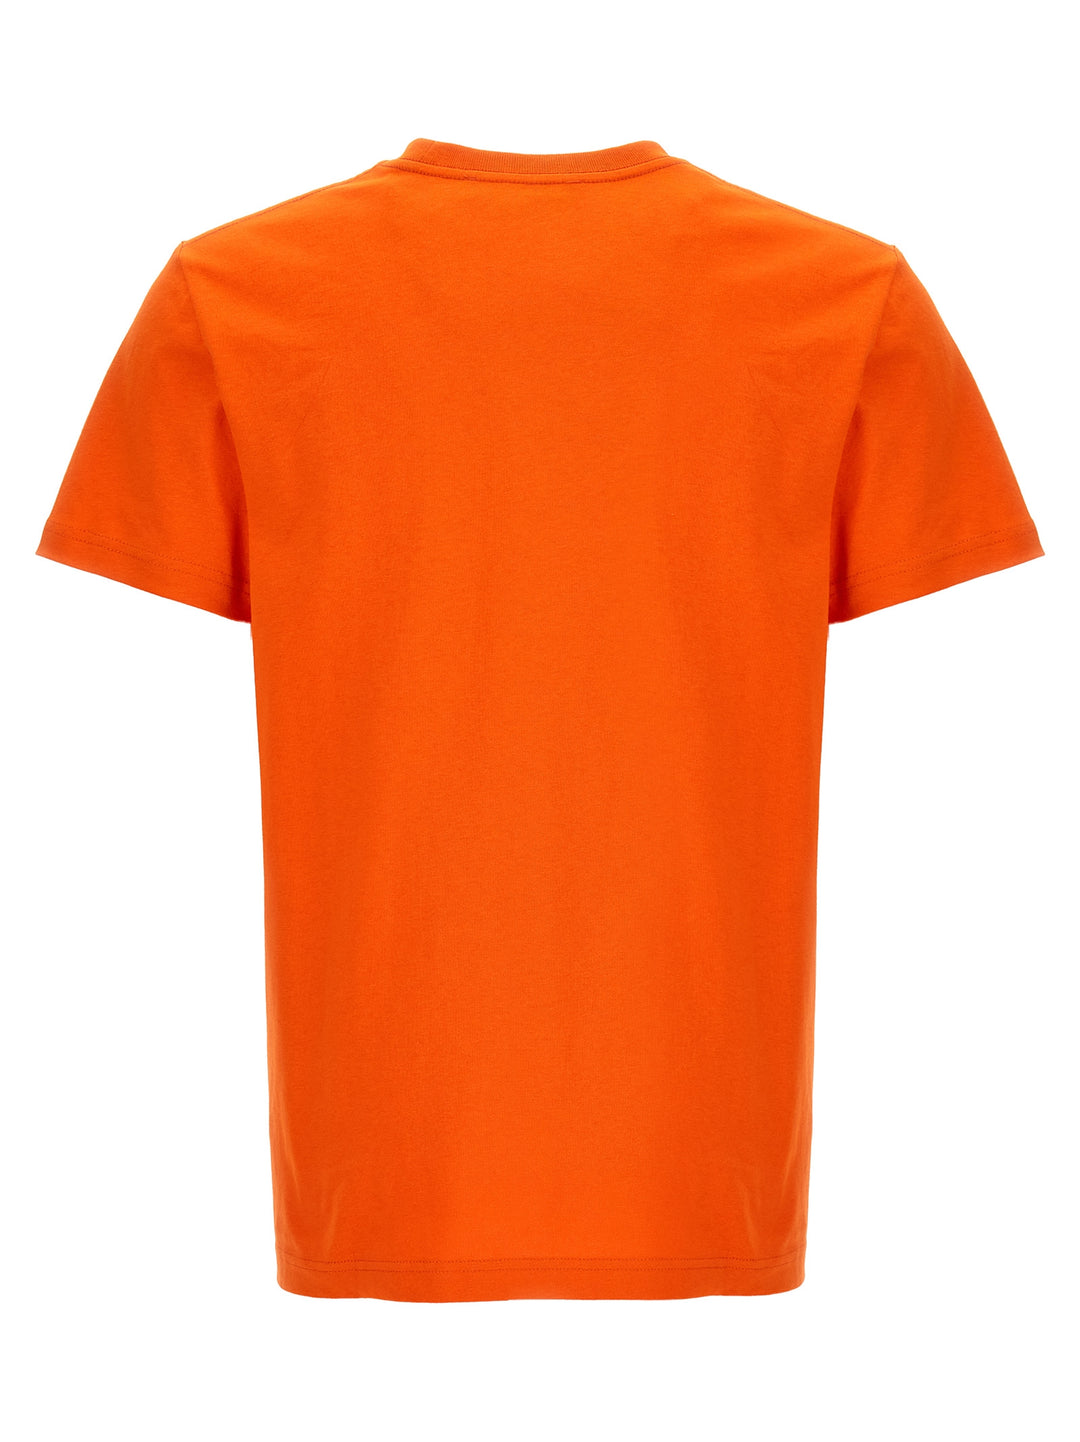 A.P.C. X Jw Anderson T Shirt Arancione